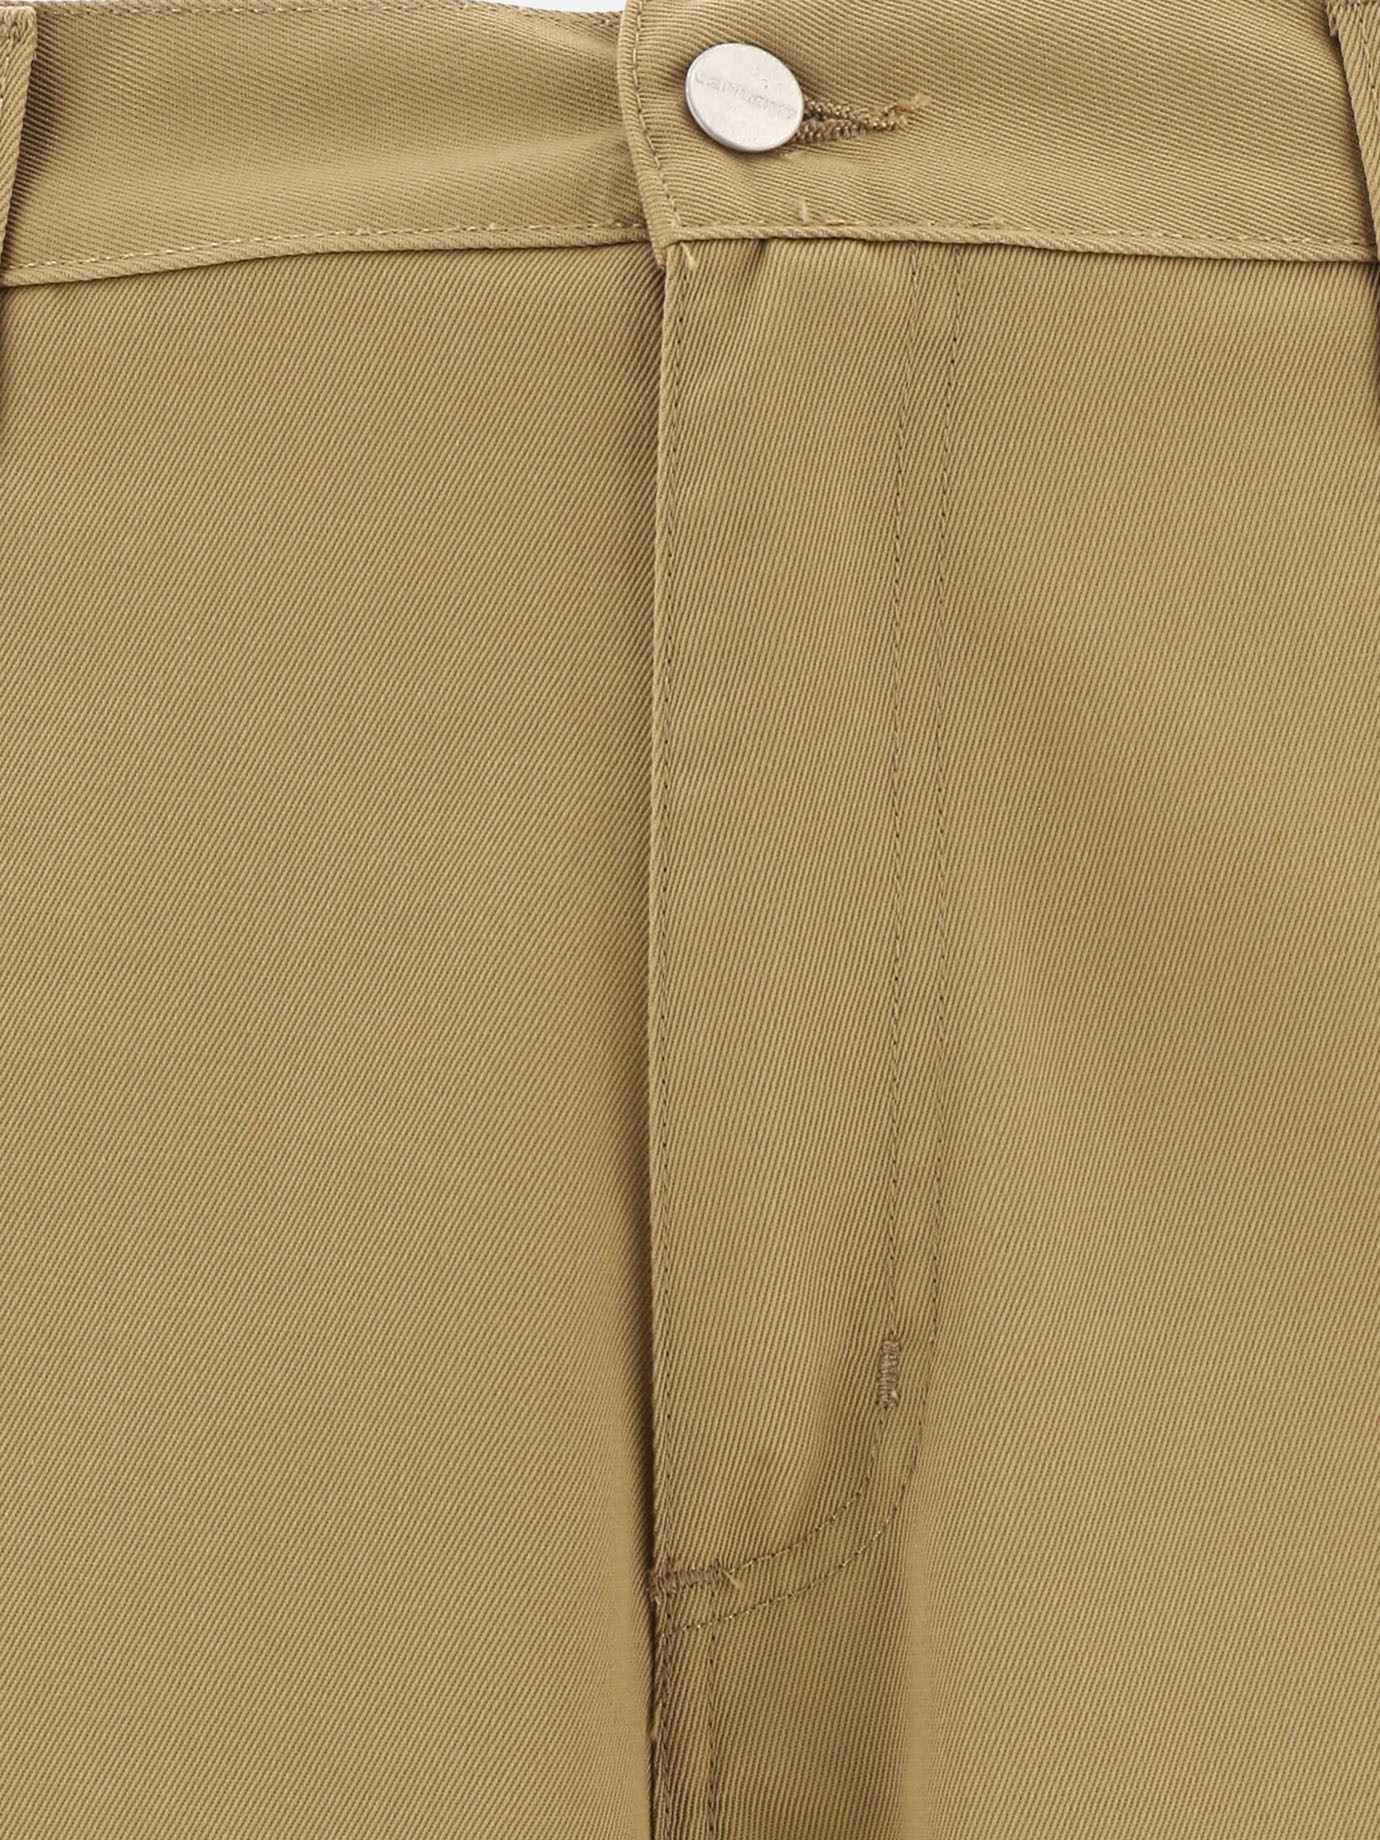 Pantaloni  Simple  by Carhartt WIP